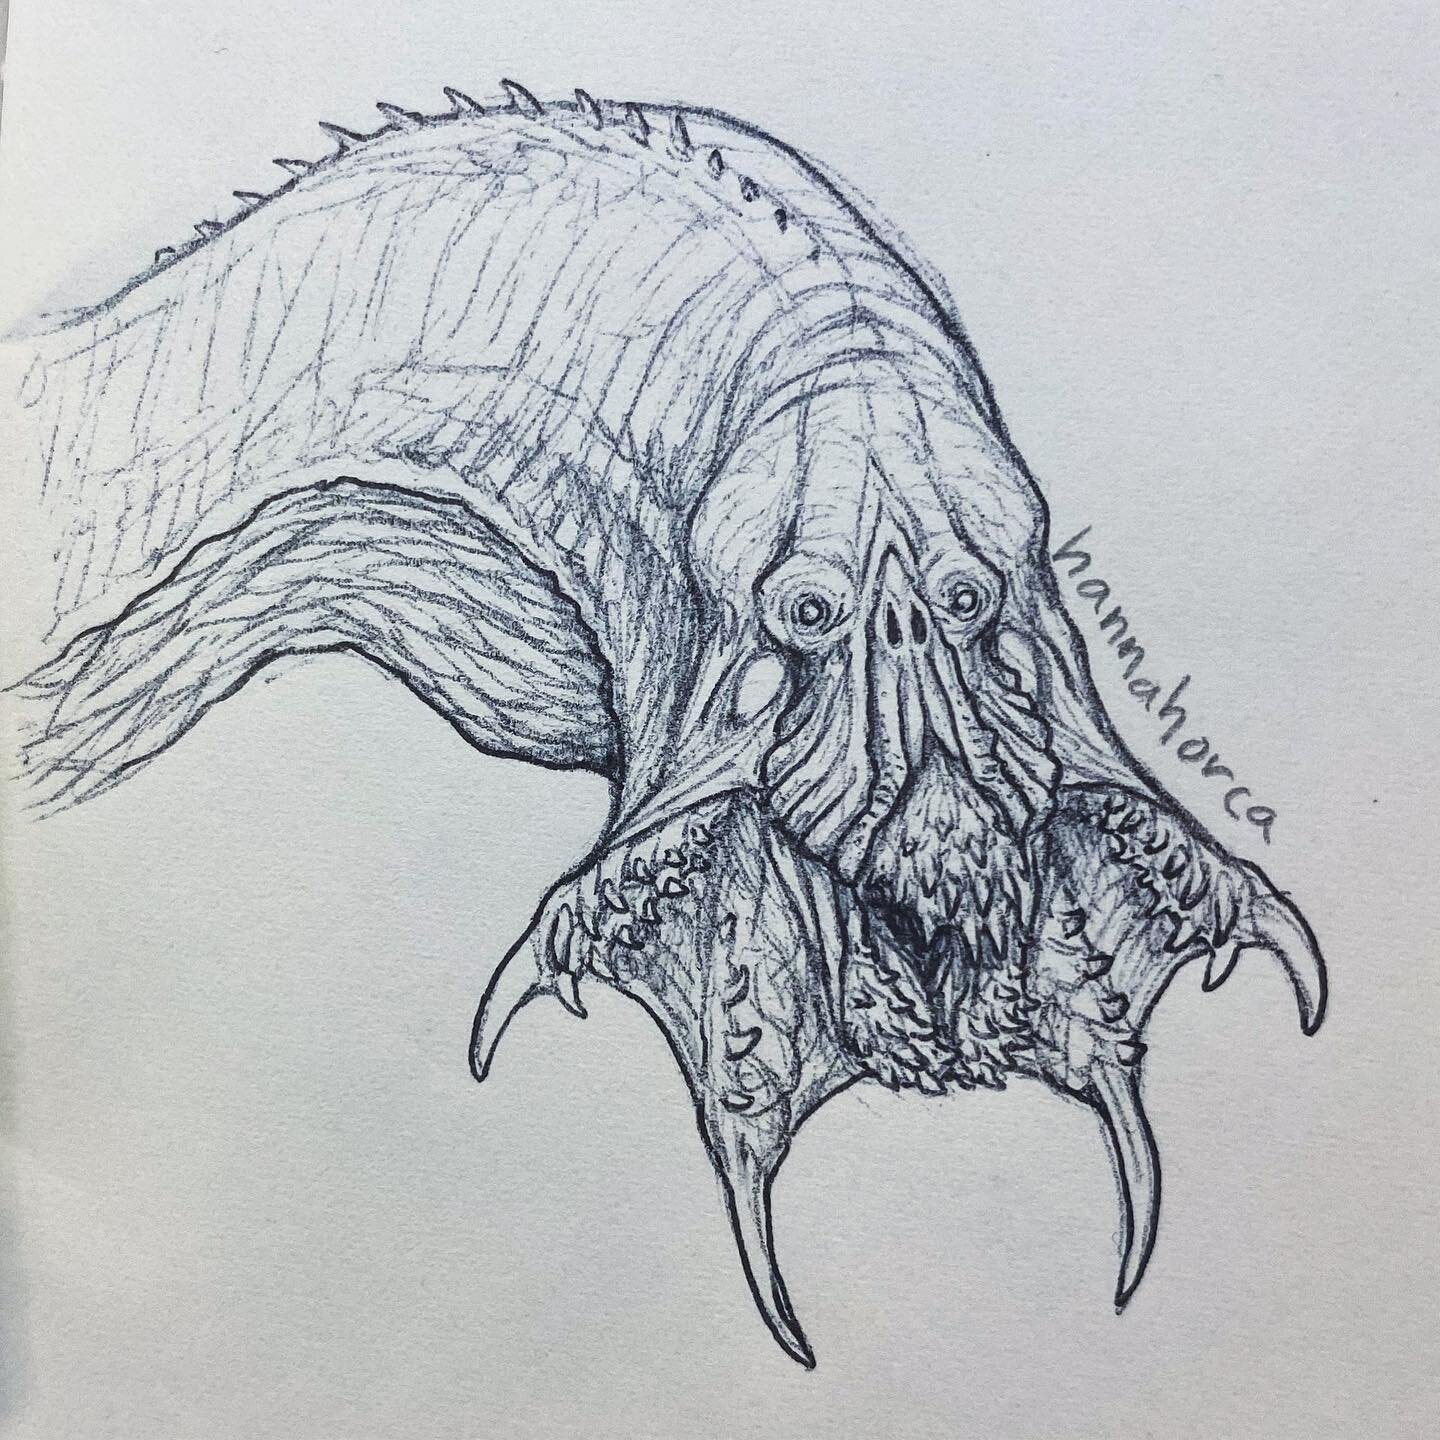 Weird demon fellow ✨

#drawing #monster #demon #pendrawing #conceptart #monsterart #demonart #horrorart #darkart #creaturedesign